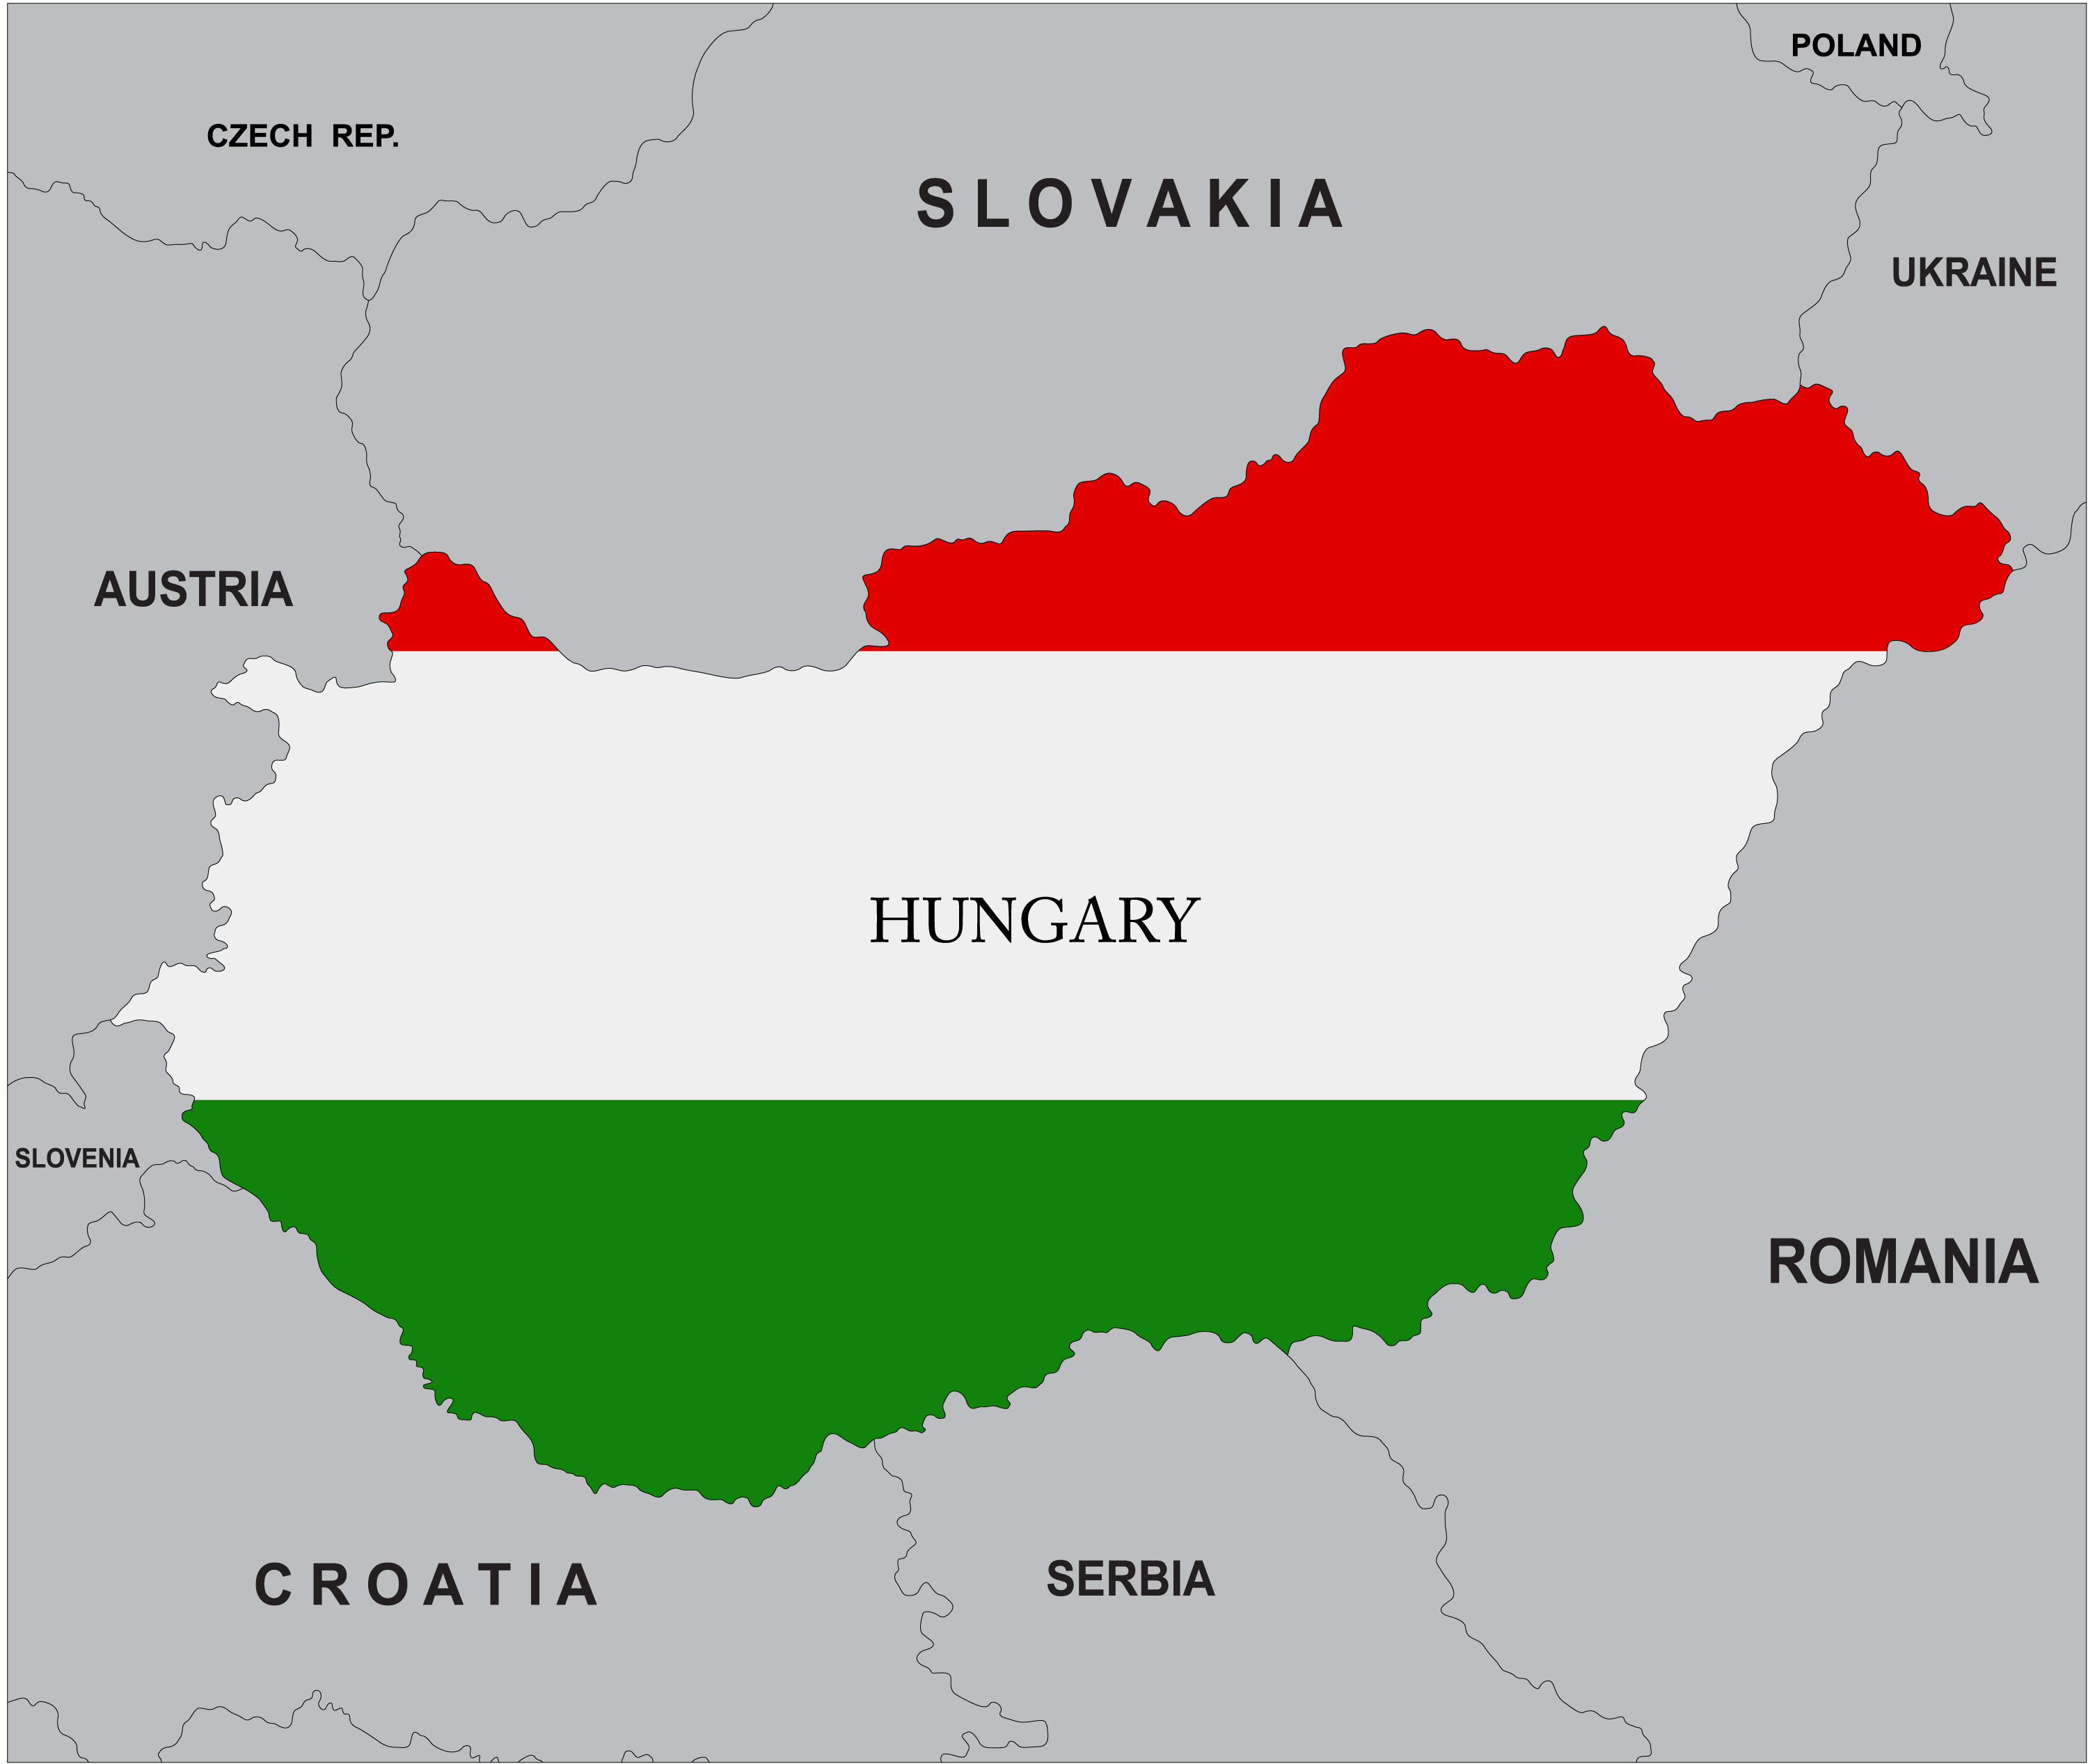 [HUNGARI] TUYỂN CÔNG NHÂN XÂY DỰNG LẤY VISA SCHENGEN DUY NHẤT NGÀY 15/02/2019